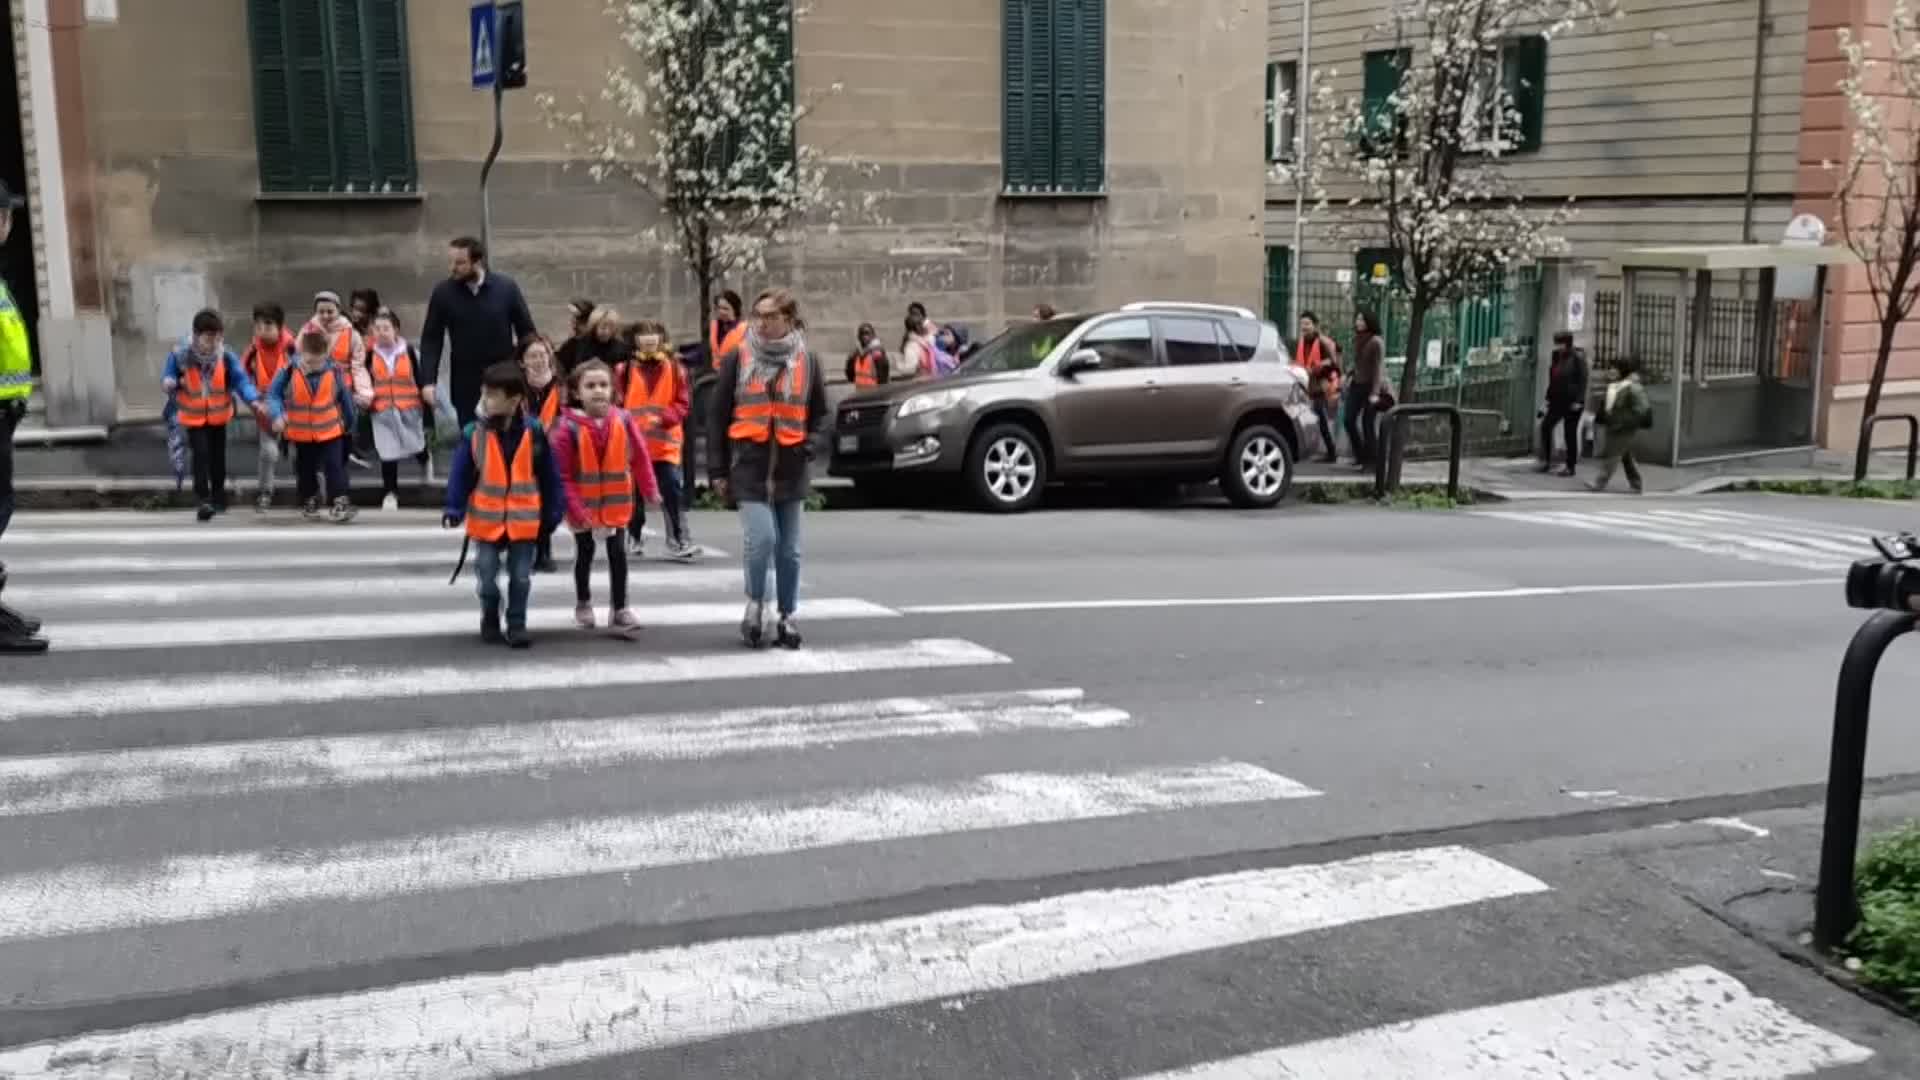 Consiglio comunale Genova, Campora: "Un piano per rafforzare la sicurezza stradale vicino alle scuole, giusto promuovere queste iniziative"